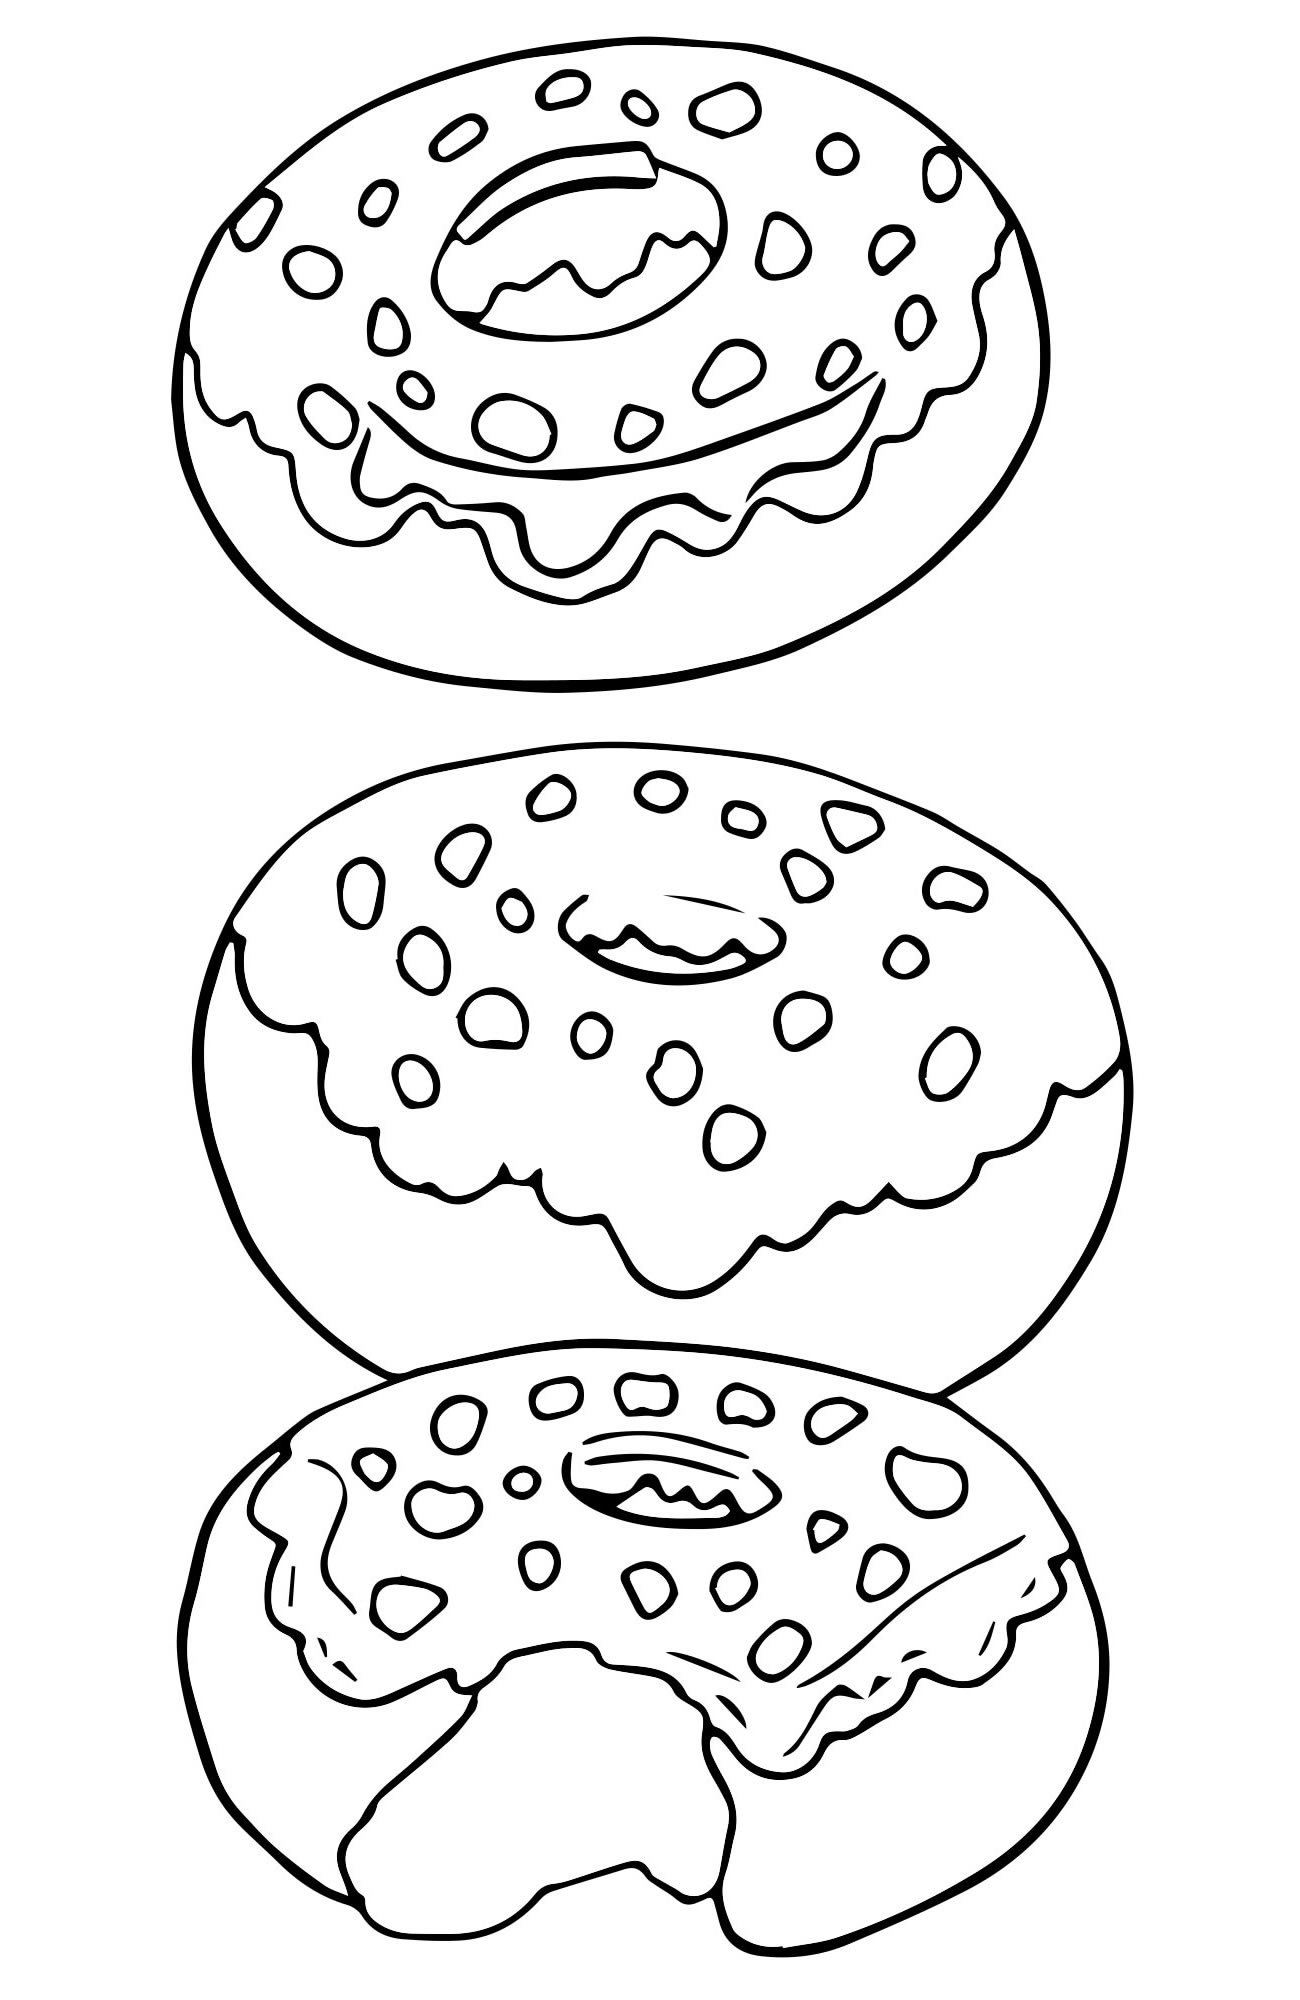 Пончики раскраска для детей